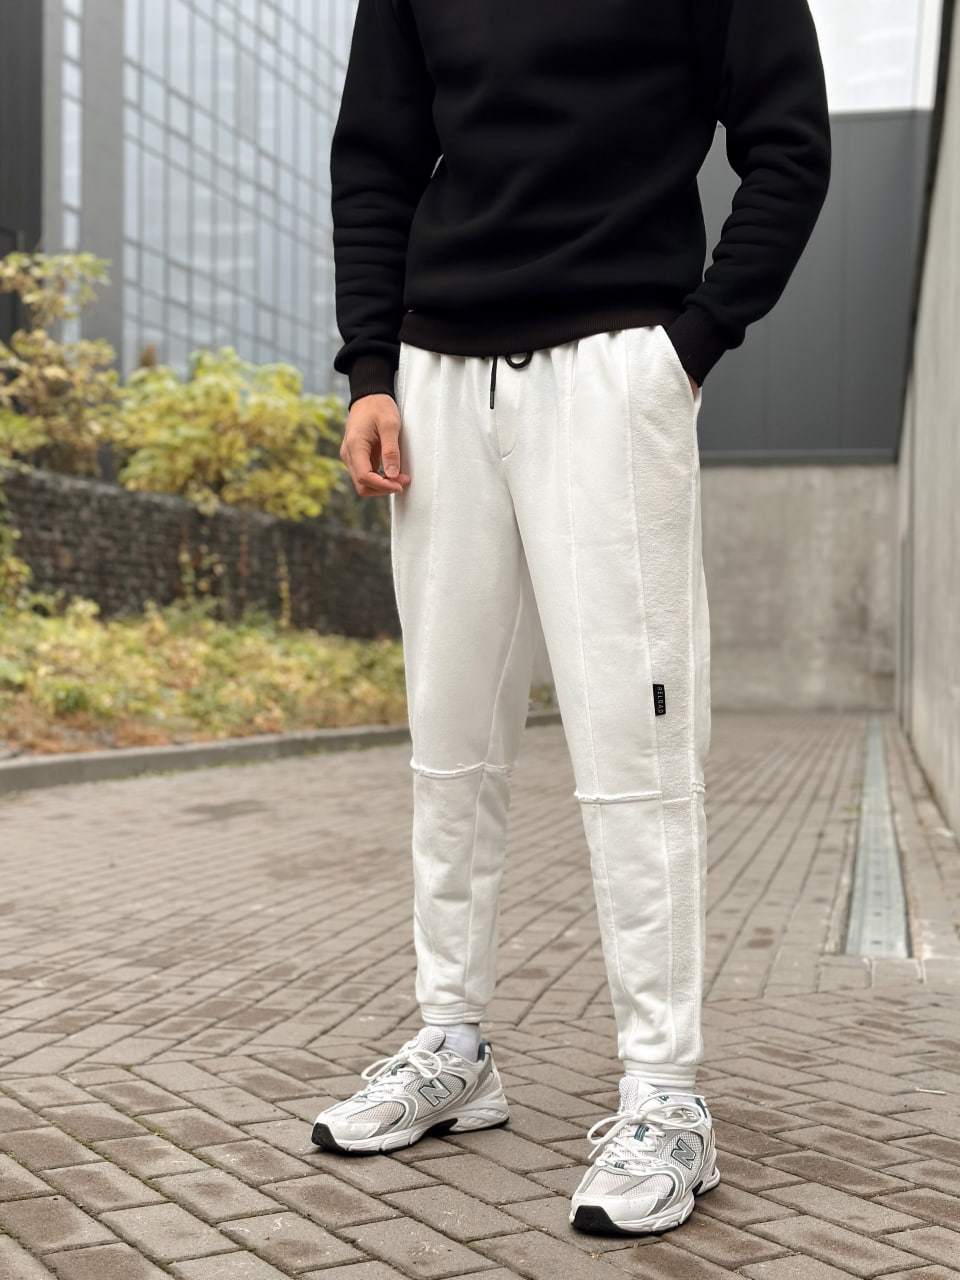 Мужские спортивные штаны трикотажные Reload Rough белые / Спортивки зауженные cтильные демисезонные